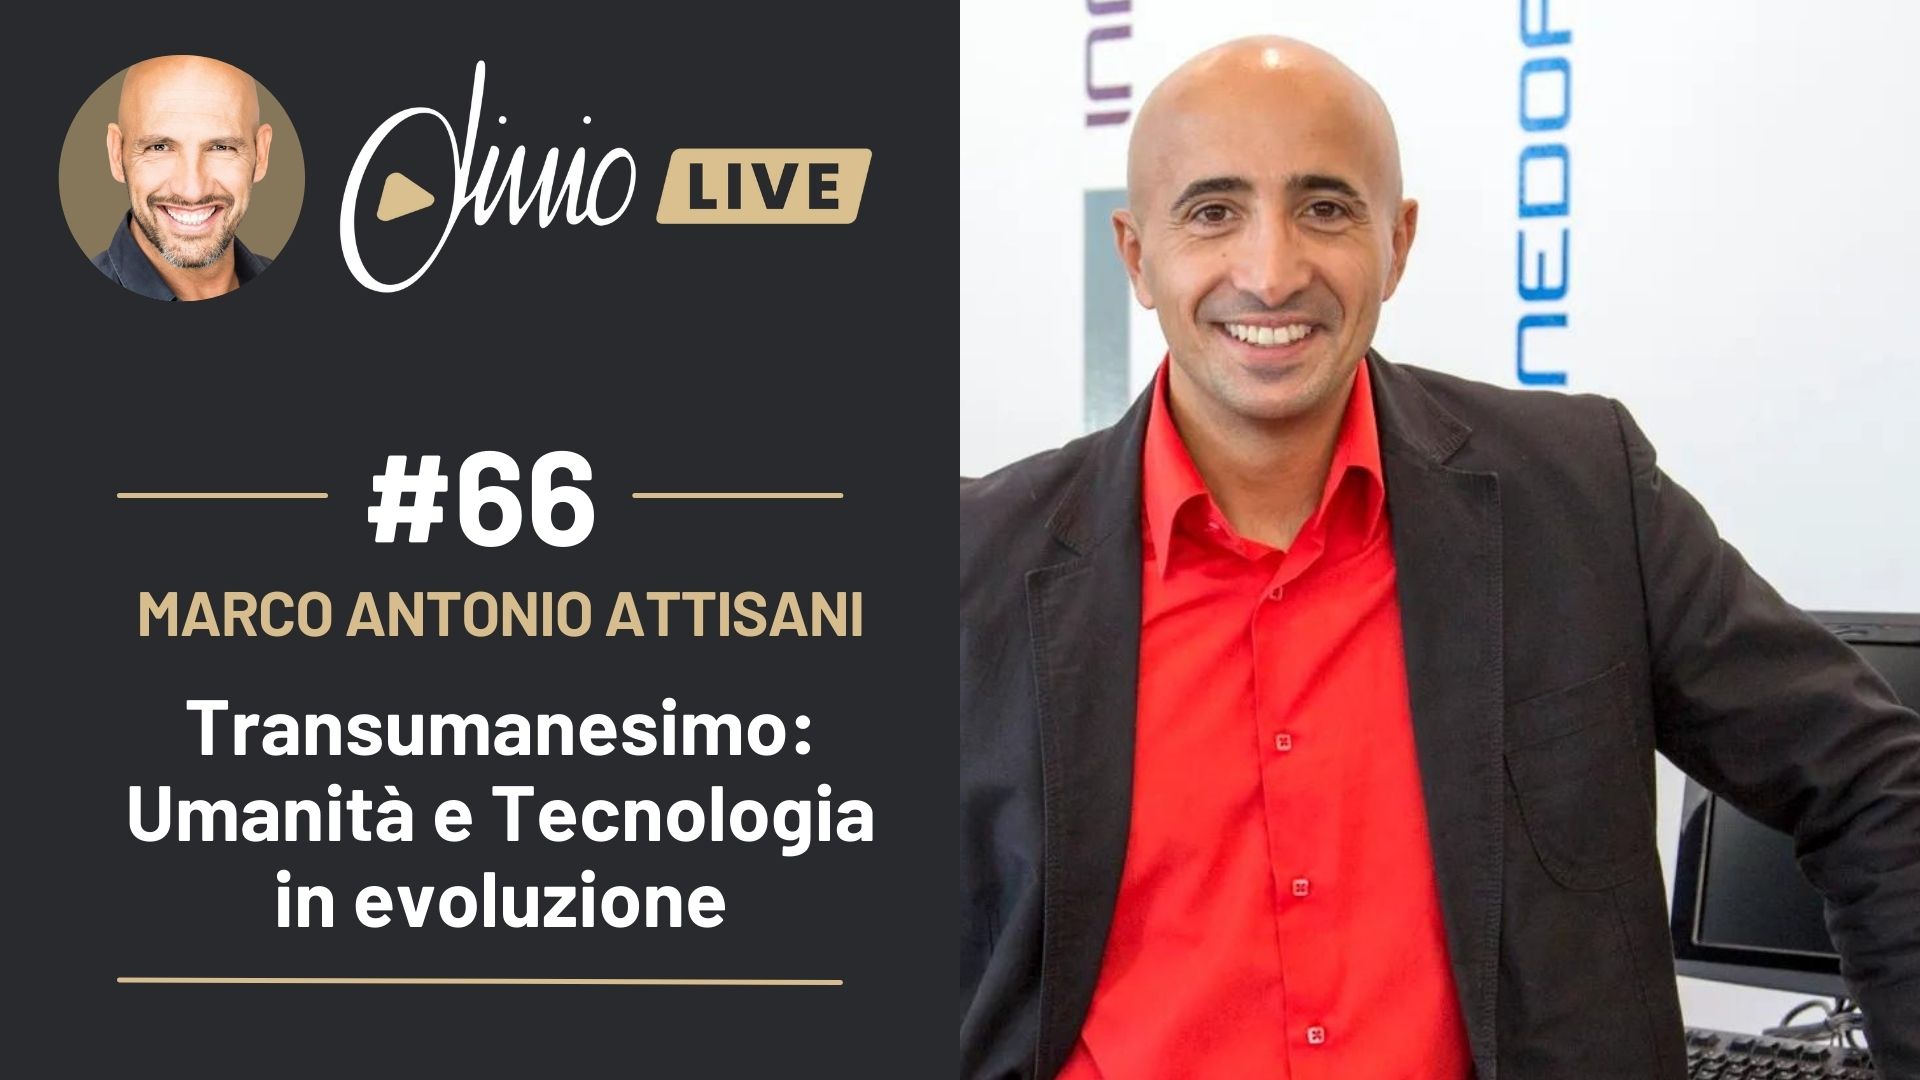 #LivioLive Marco Antonio Attisani – Tecnologia ed Evoluzione